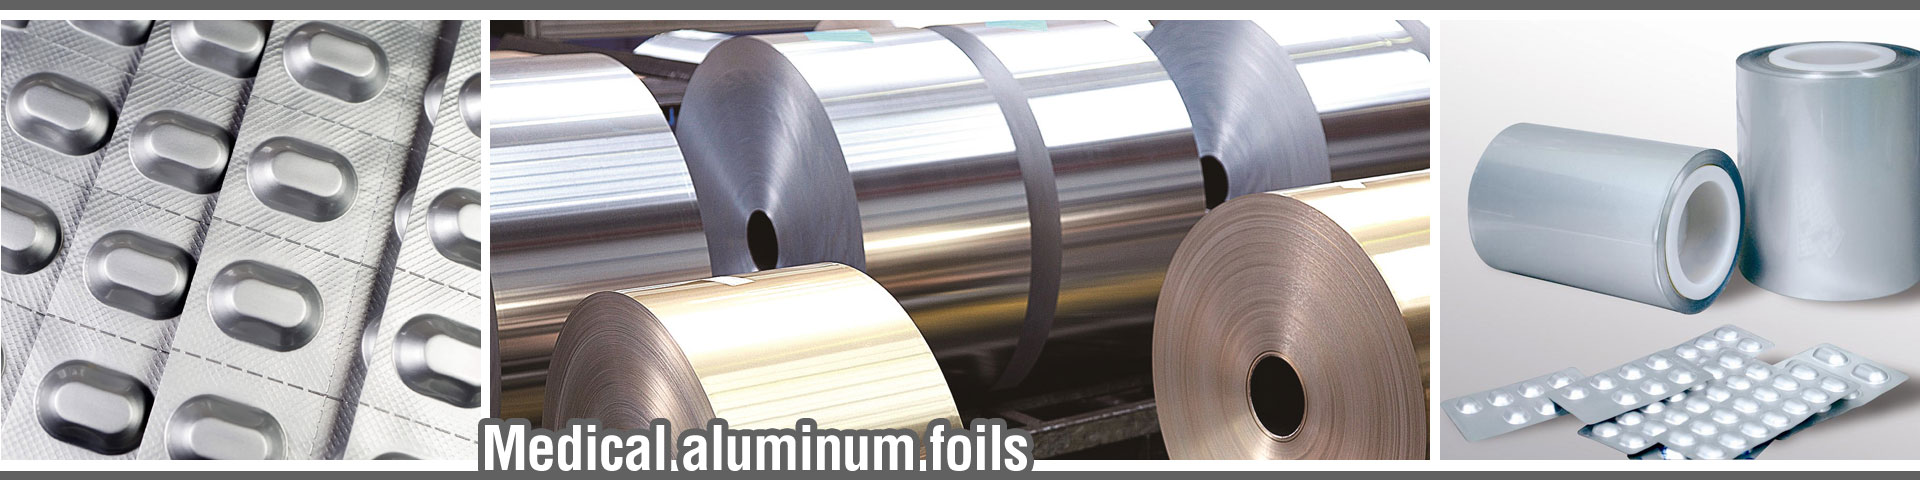 medical aluminum foil supplier manufacturer